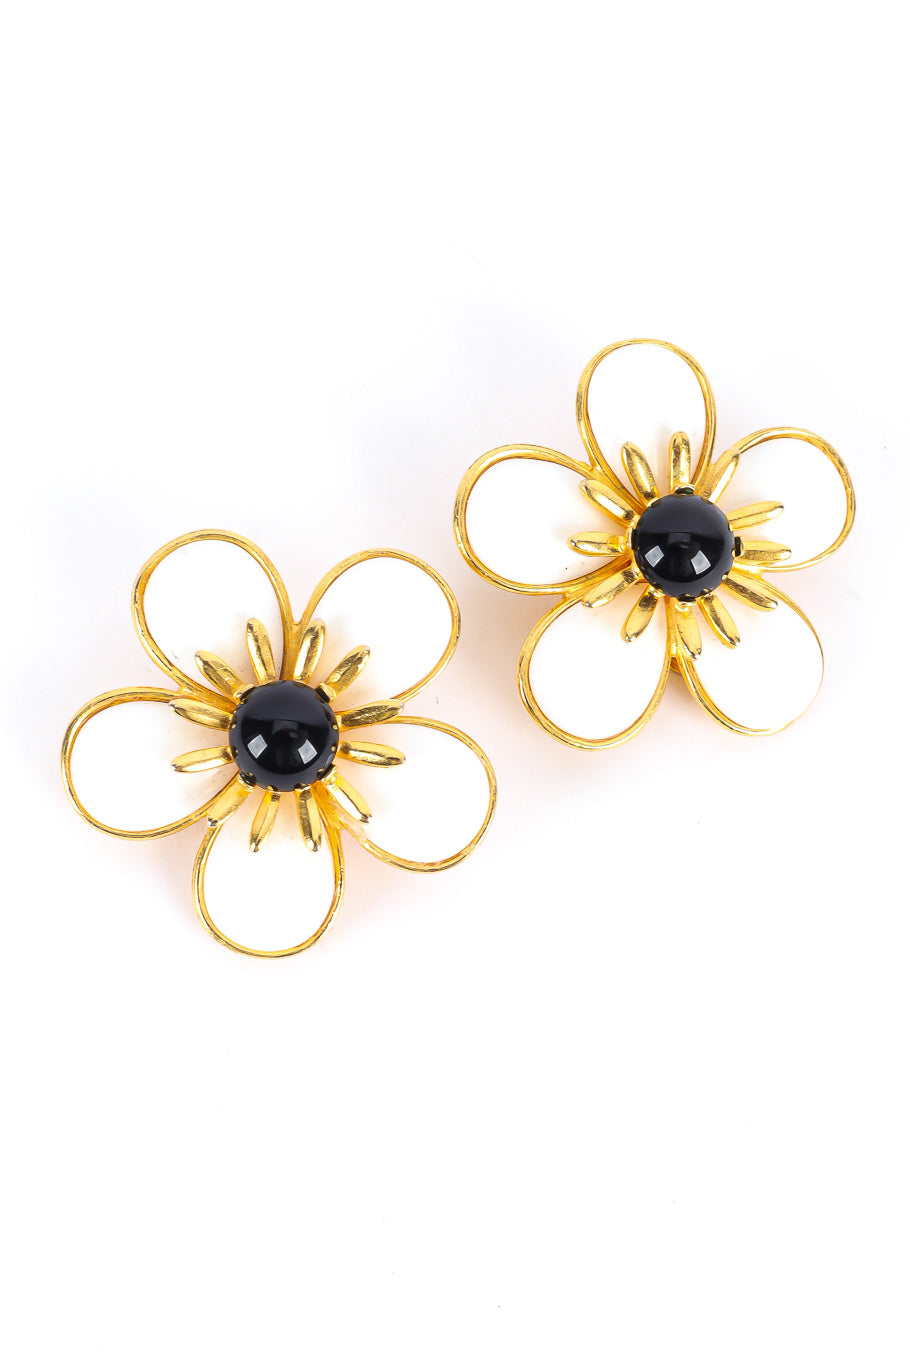 Flower bracelet and earring set by Ben Amun daisy earrings flat @recessla